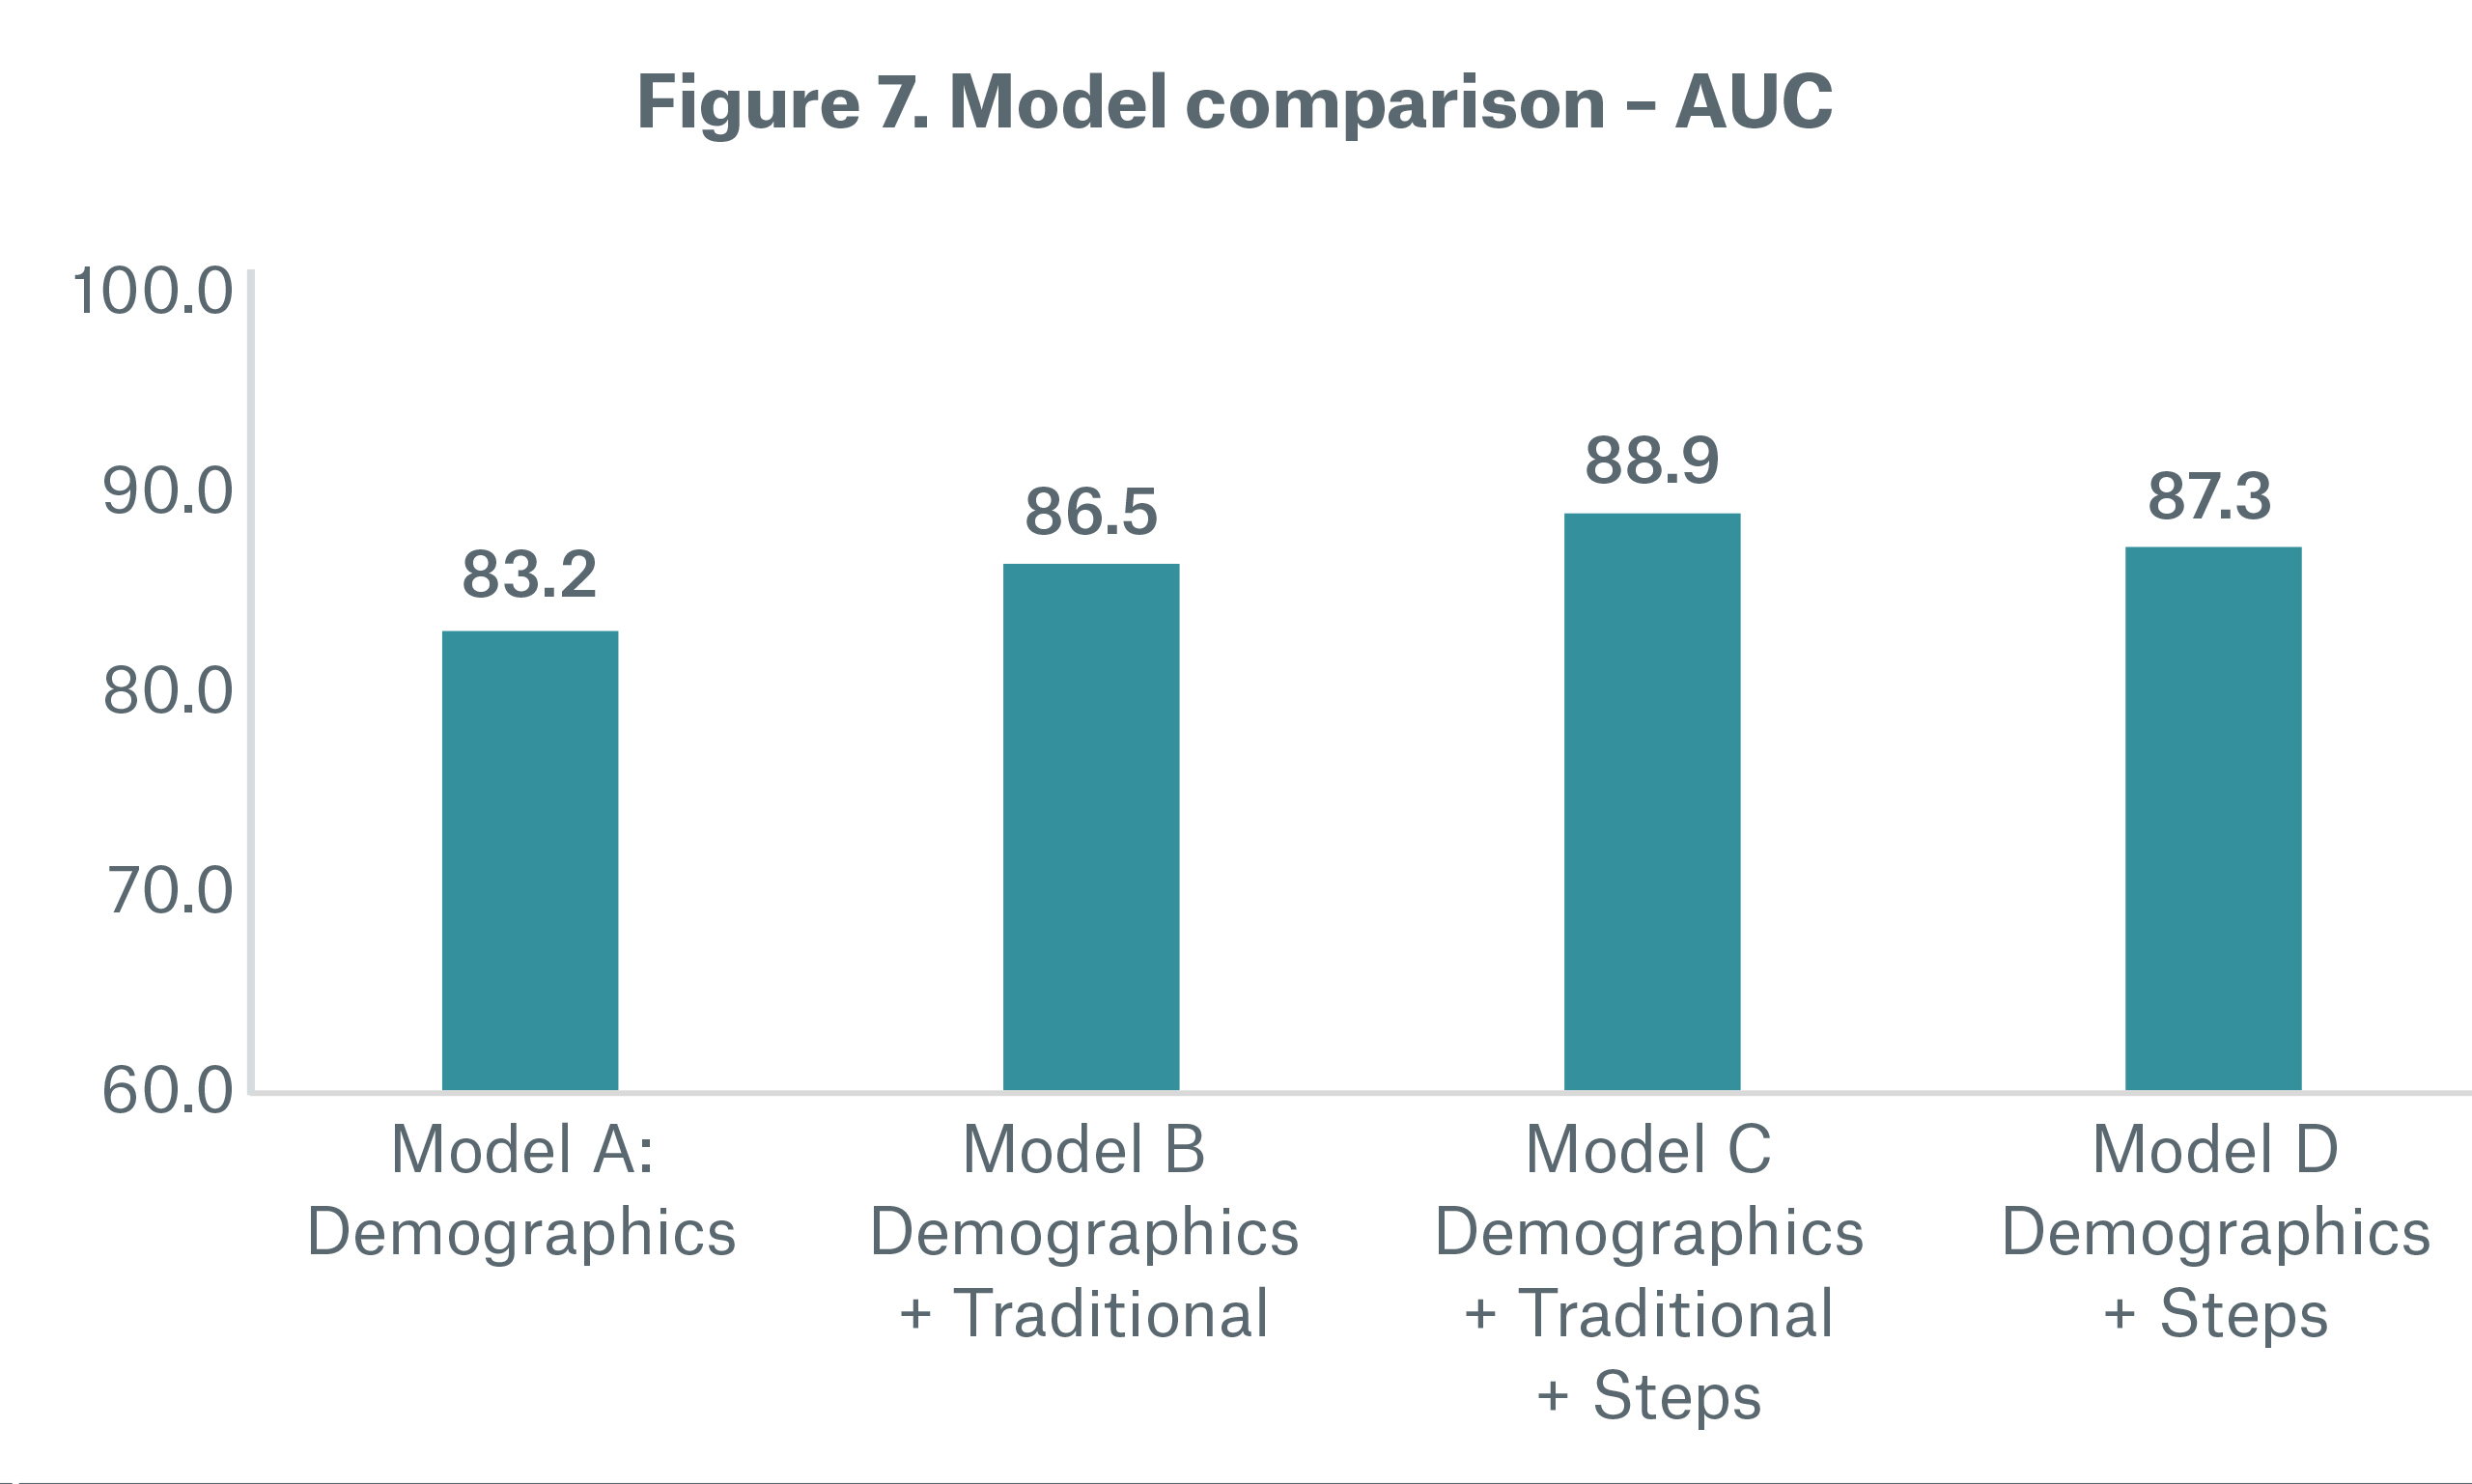 Figure 7 Model Comparison - AUC